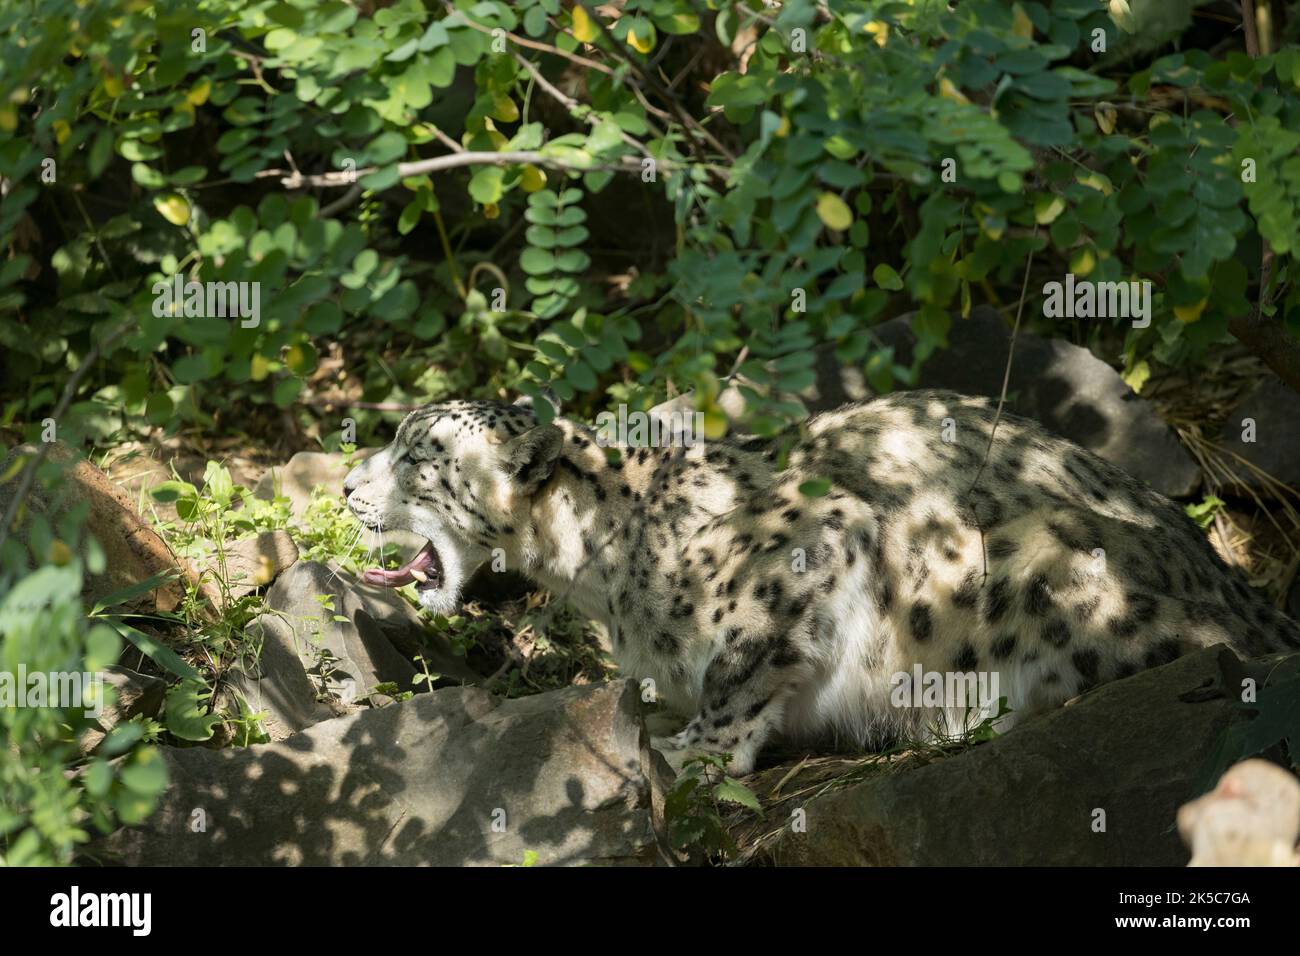 Snow Leopard Big cat Nyiregyhaza Sosto zoo Hungary Stock Photo